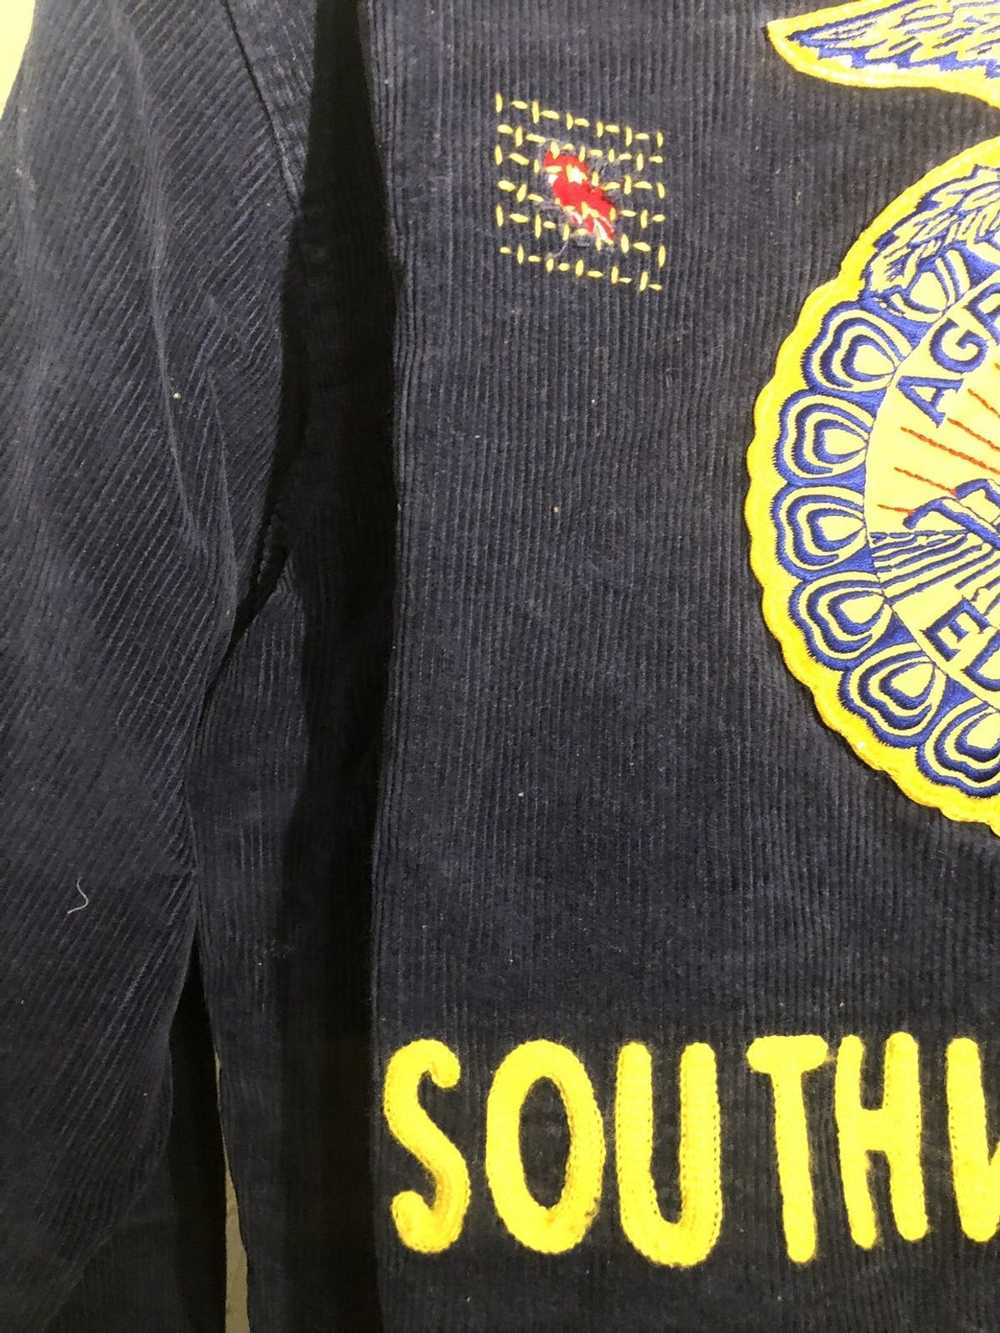 Vintage Vintage FFA Missouri jacket - image 4